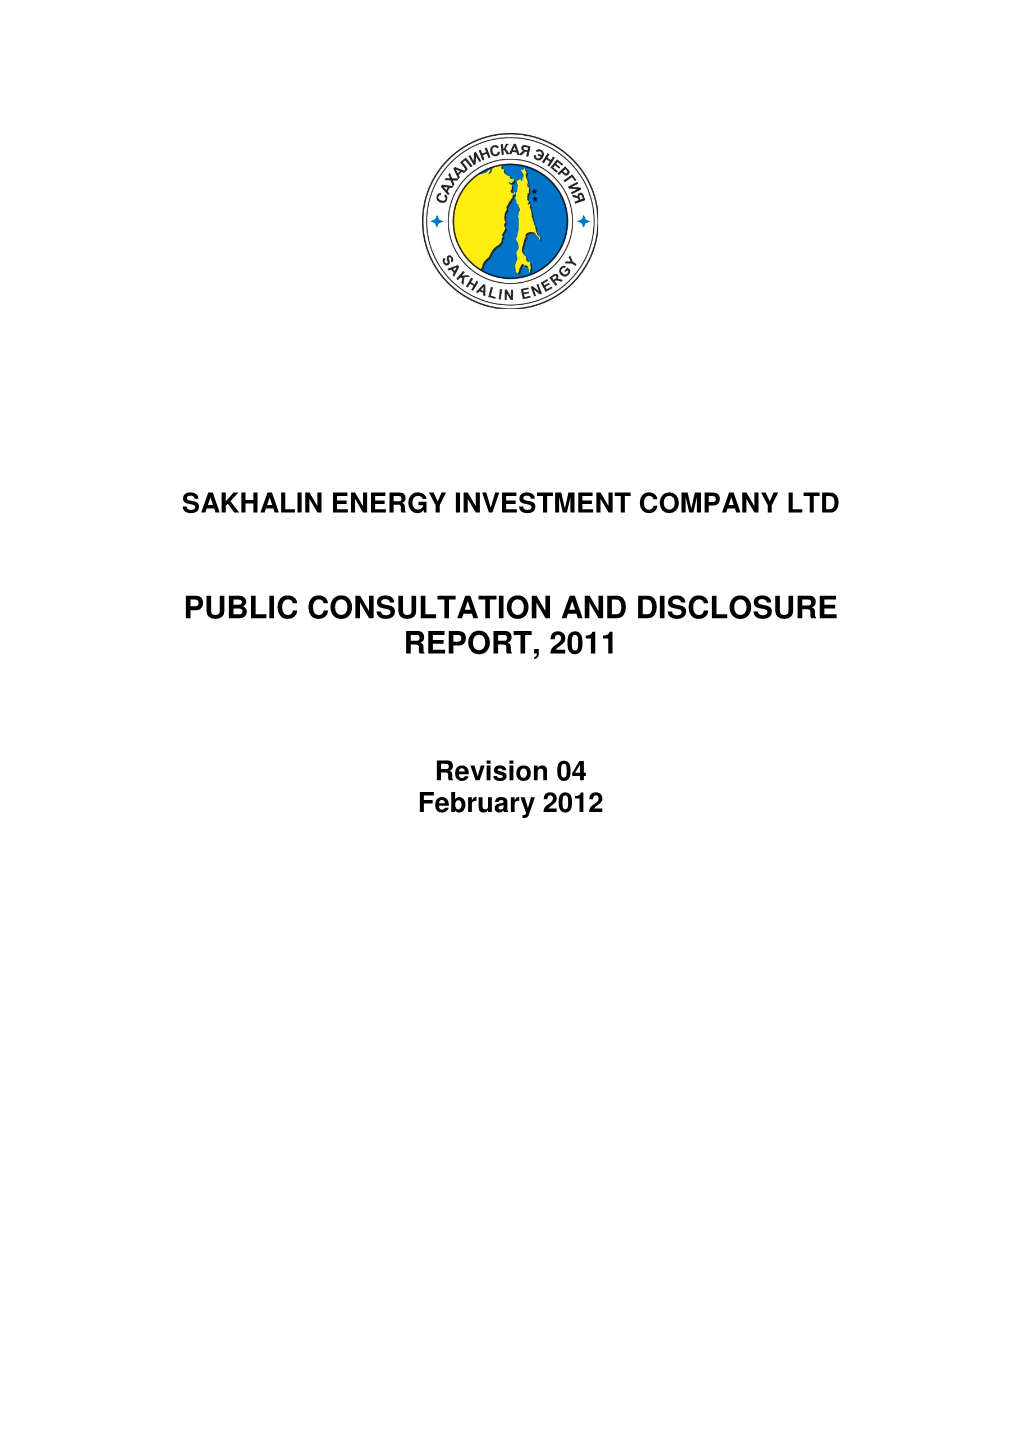 Public Consultation and Disclosure Report, 2011